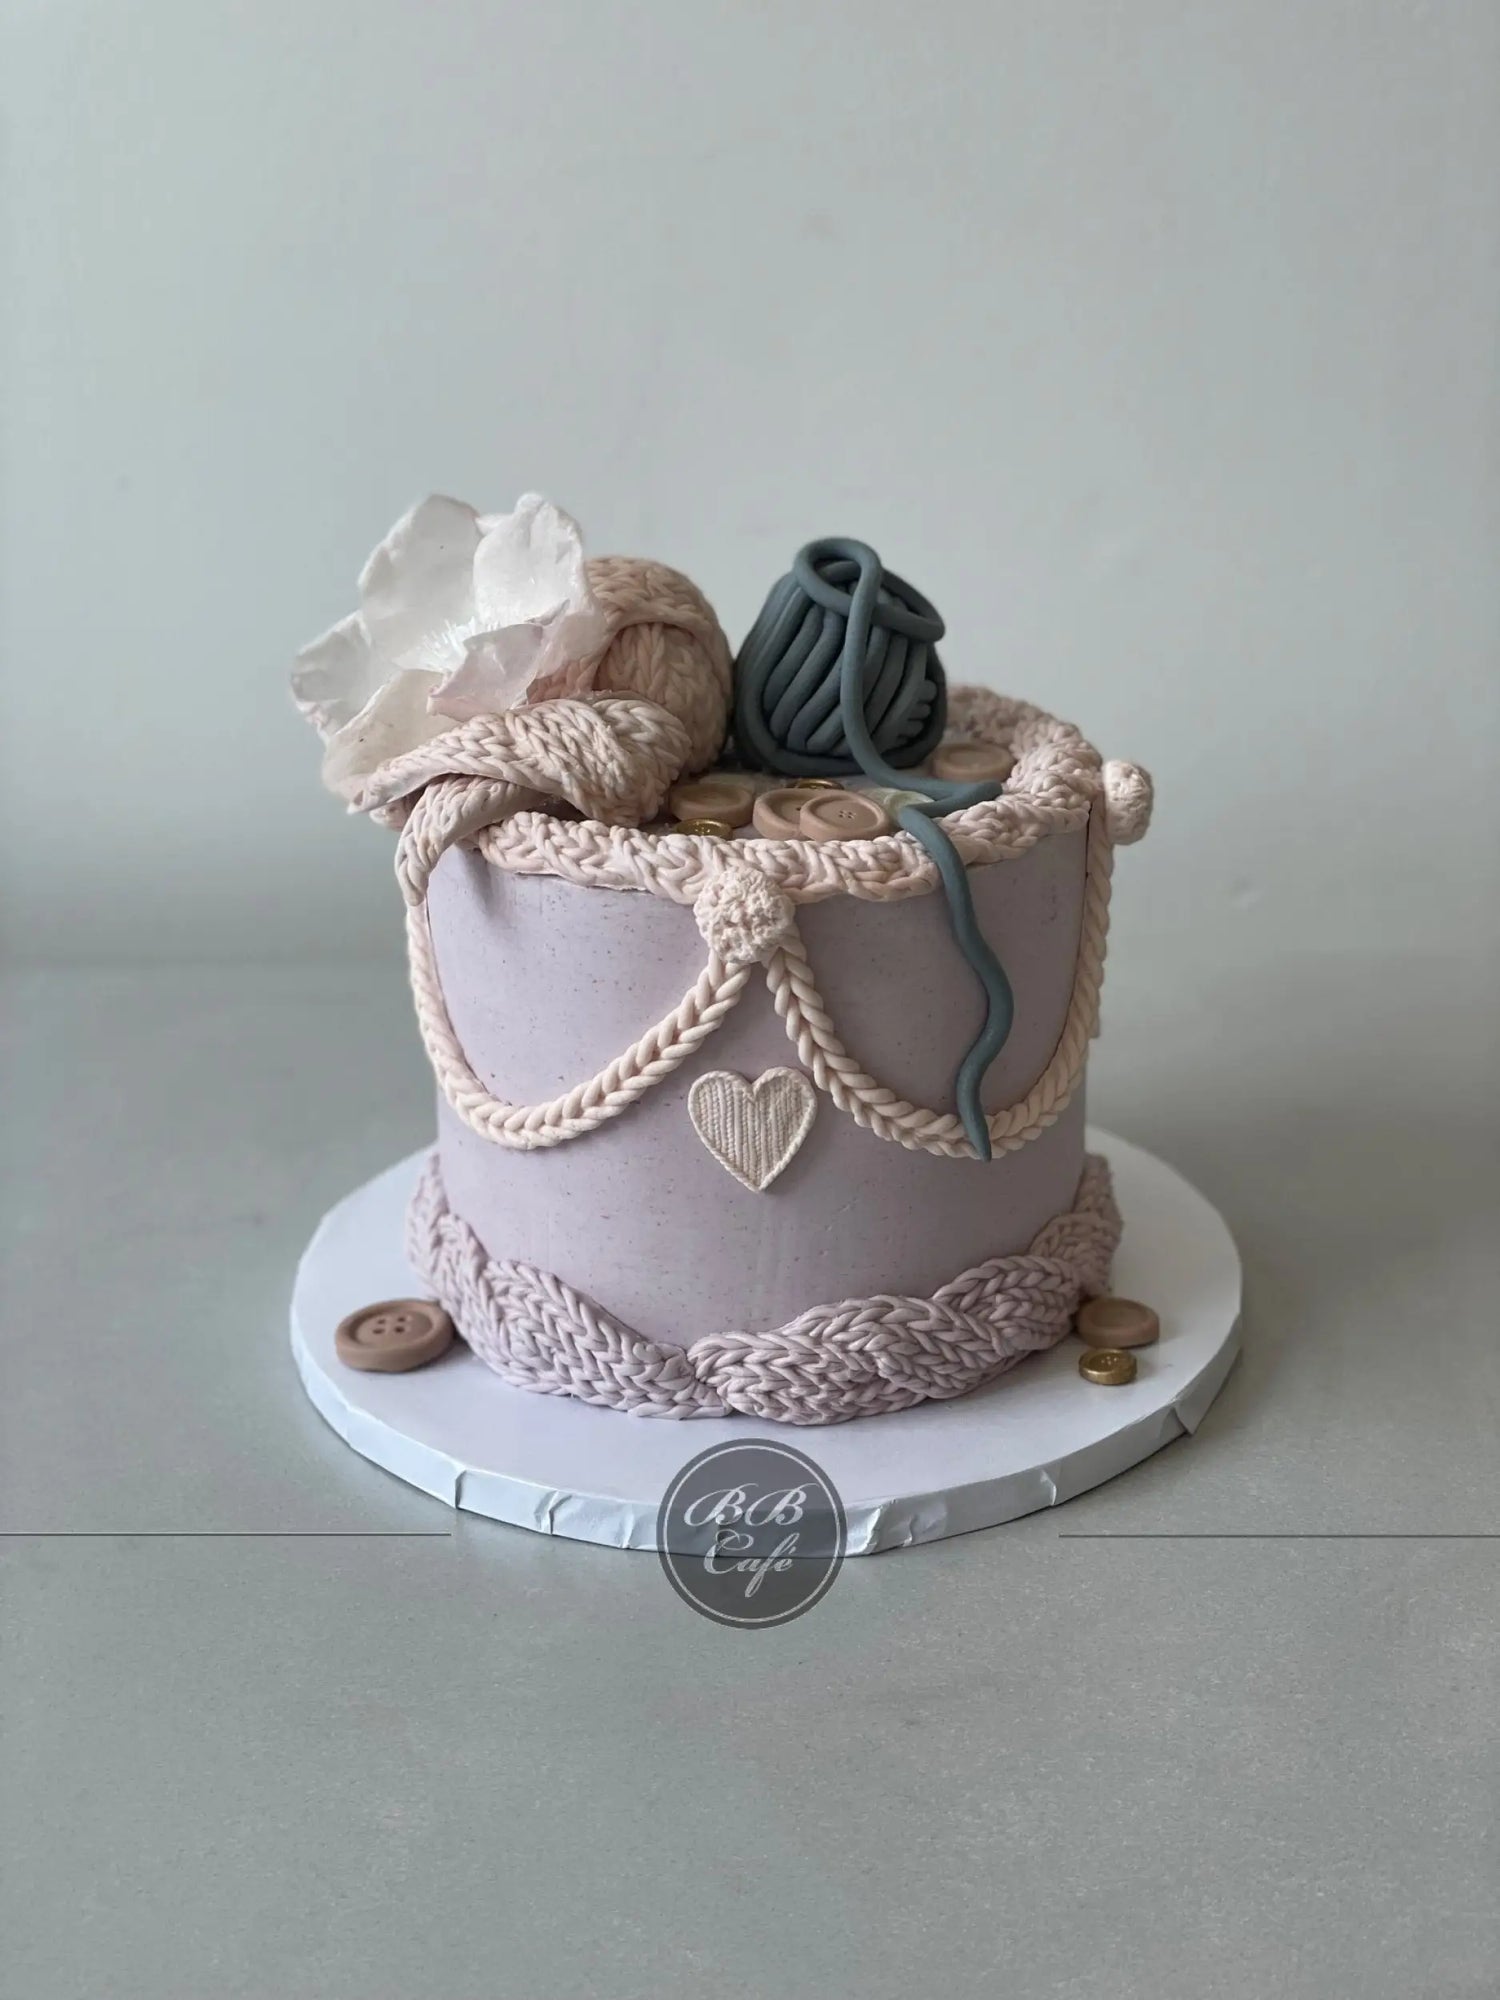 Knitting on buttercream - custom cake